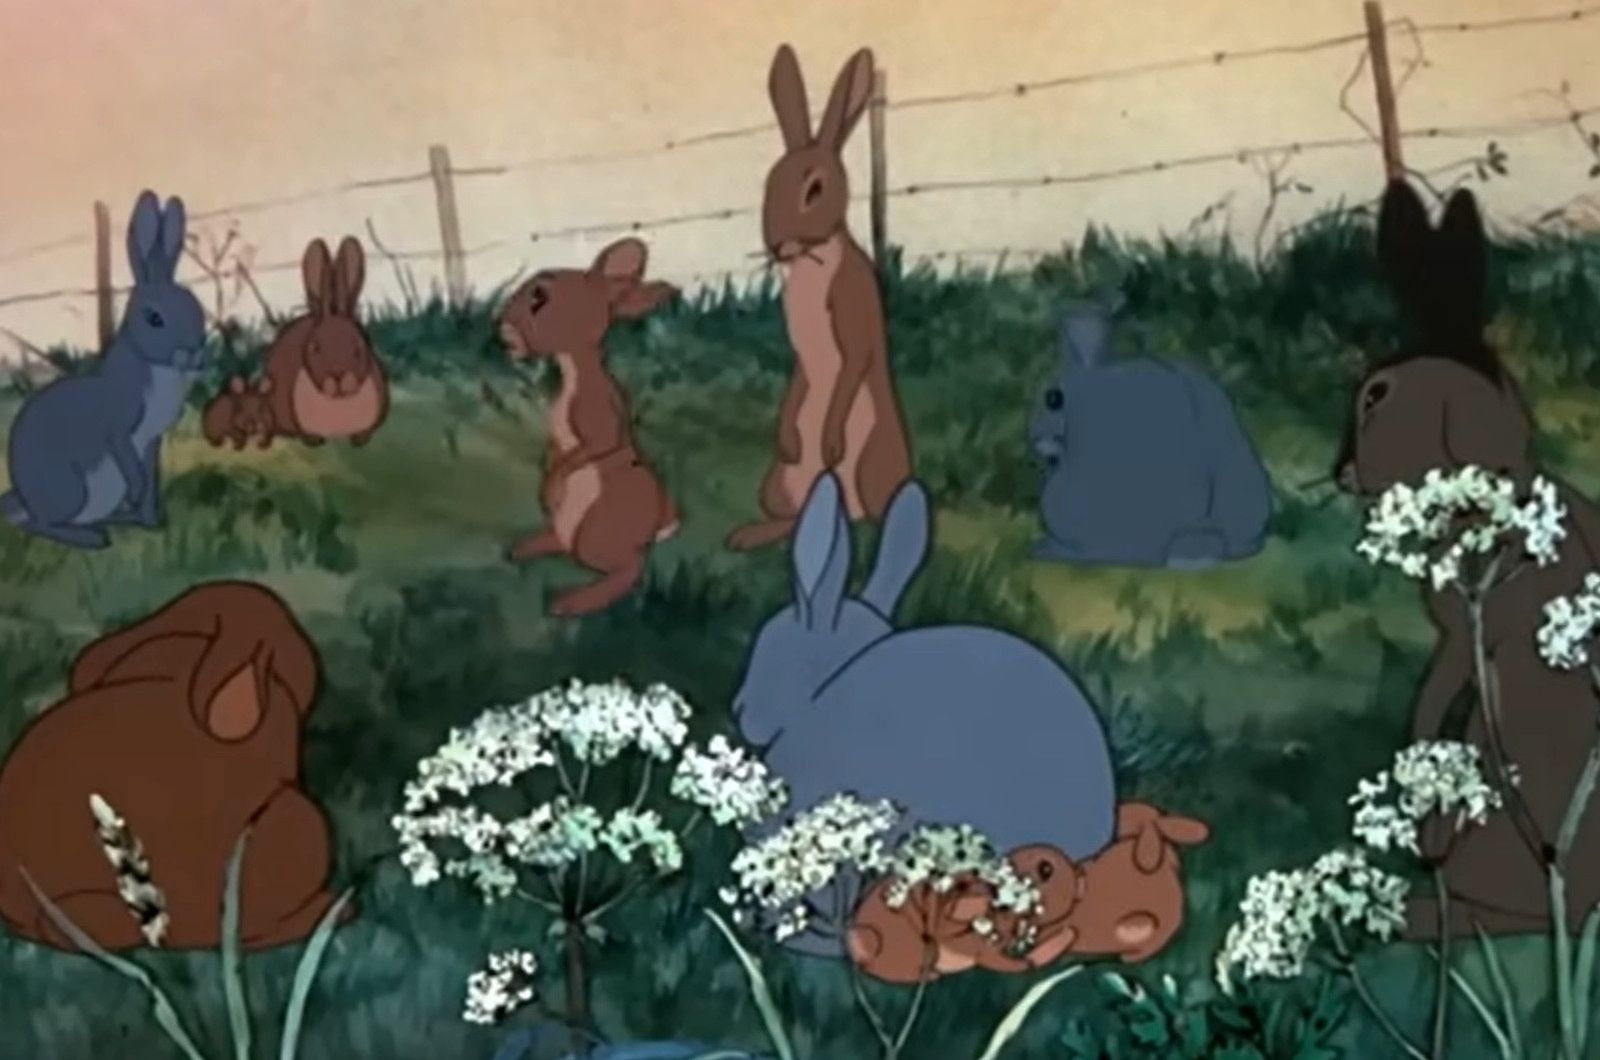 Pokazali tę animację w Wielkanoc. Film o królikach wywołał burzę